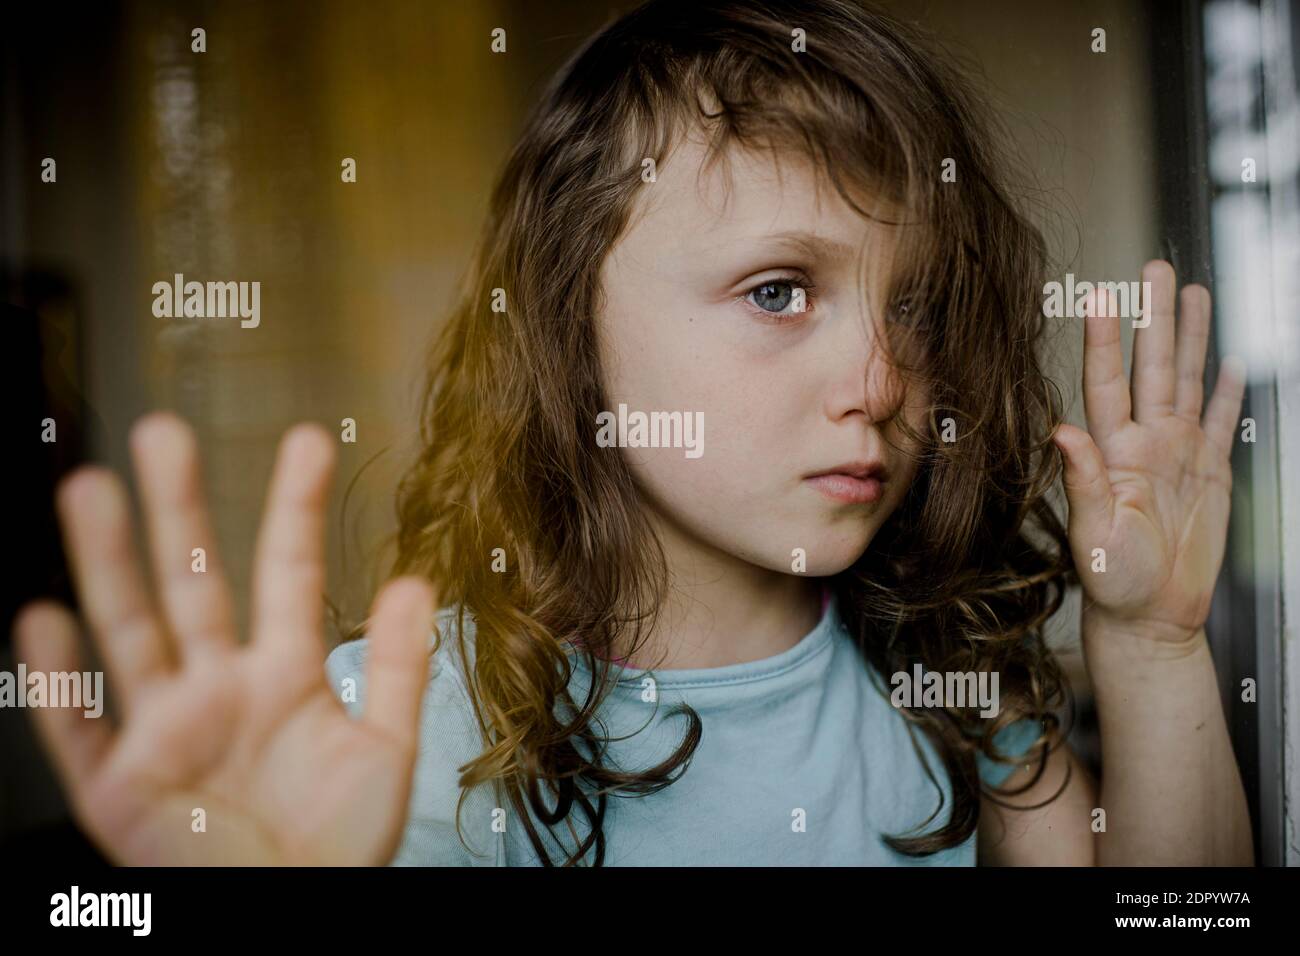 L'enfant regarde malheureusement à travers le volet de fenêtre Banque D'Images